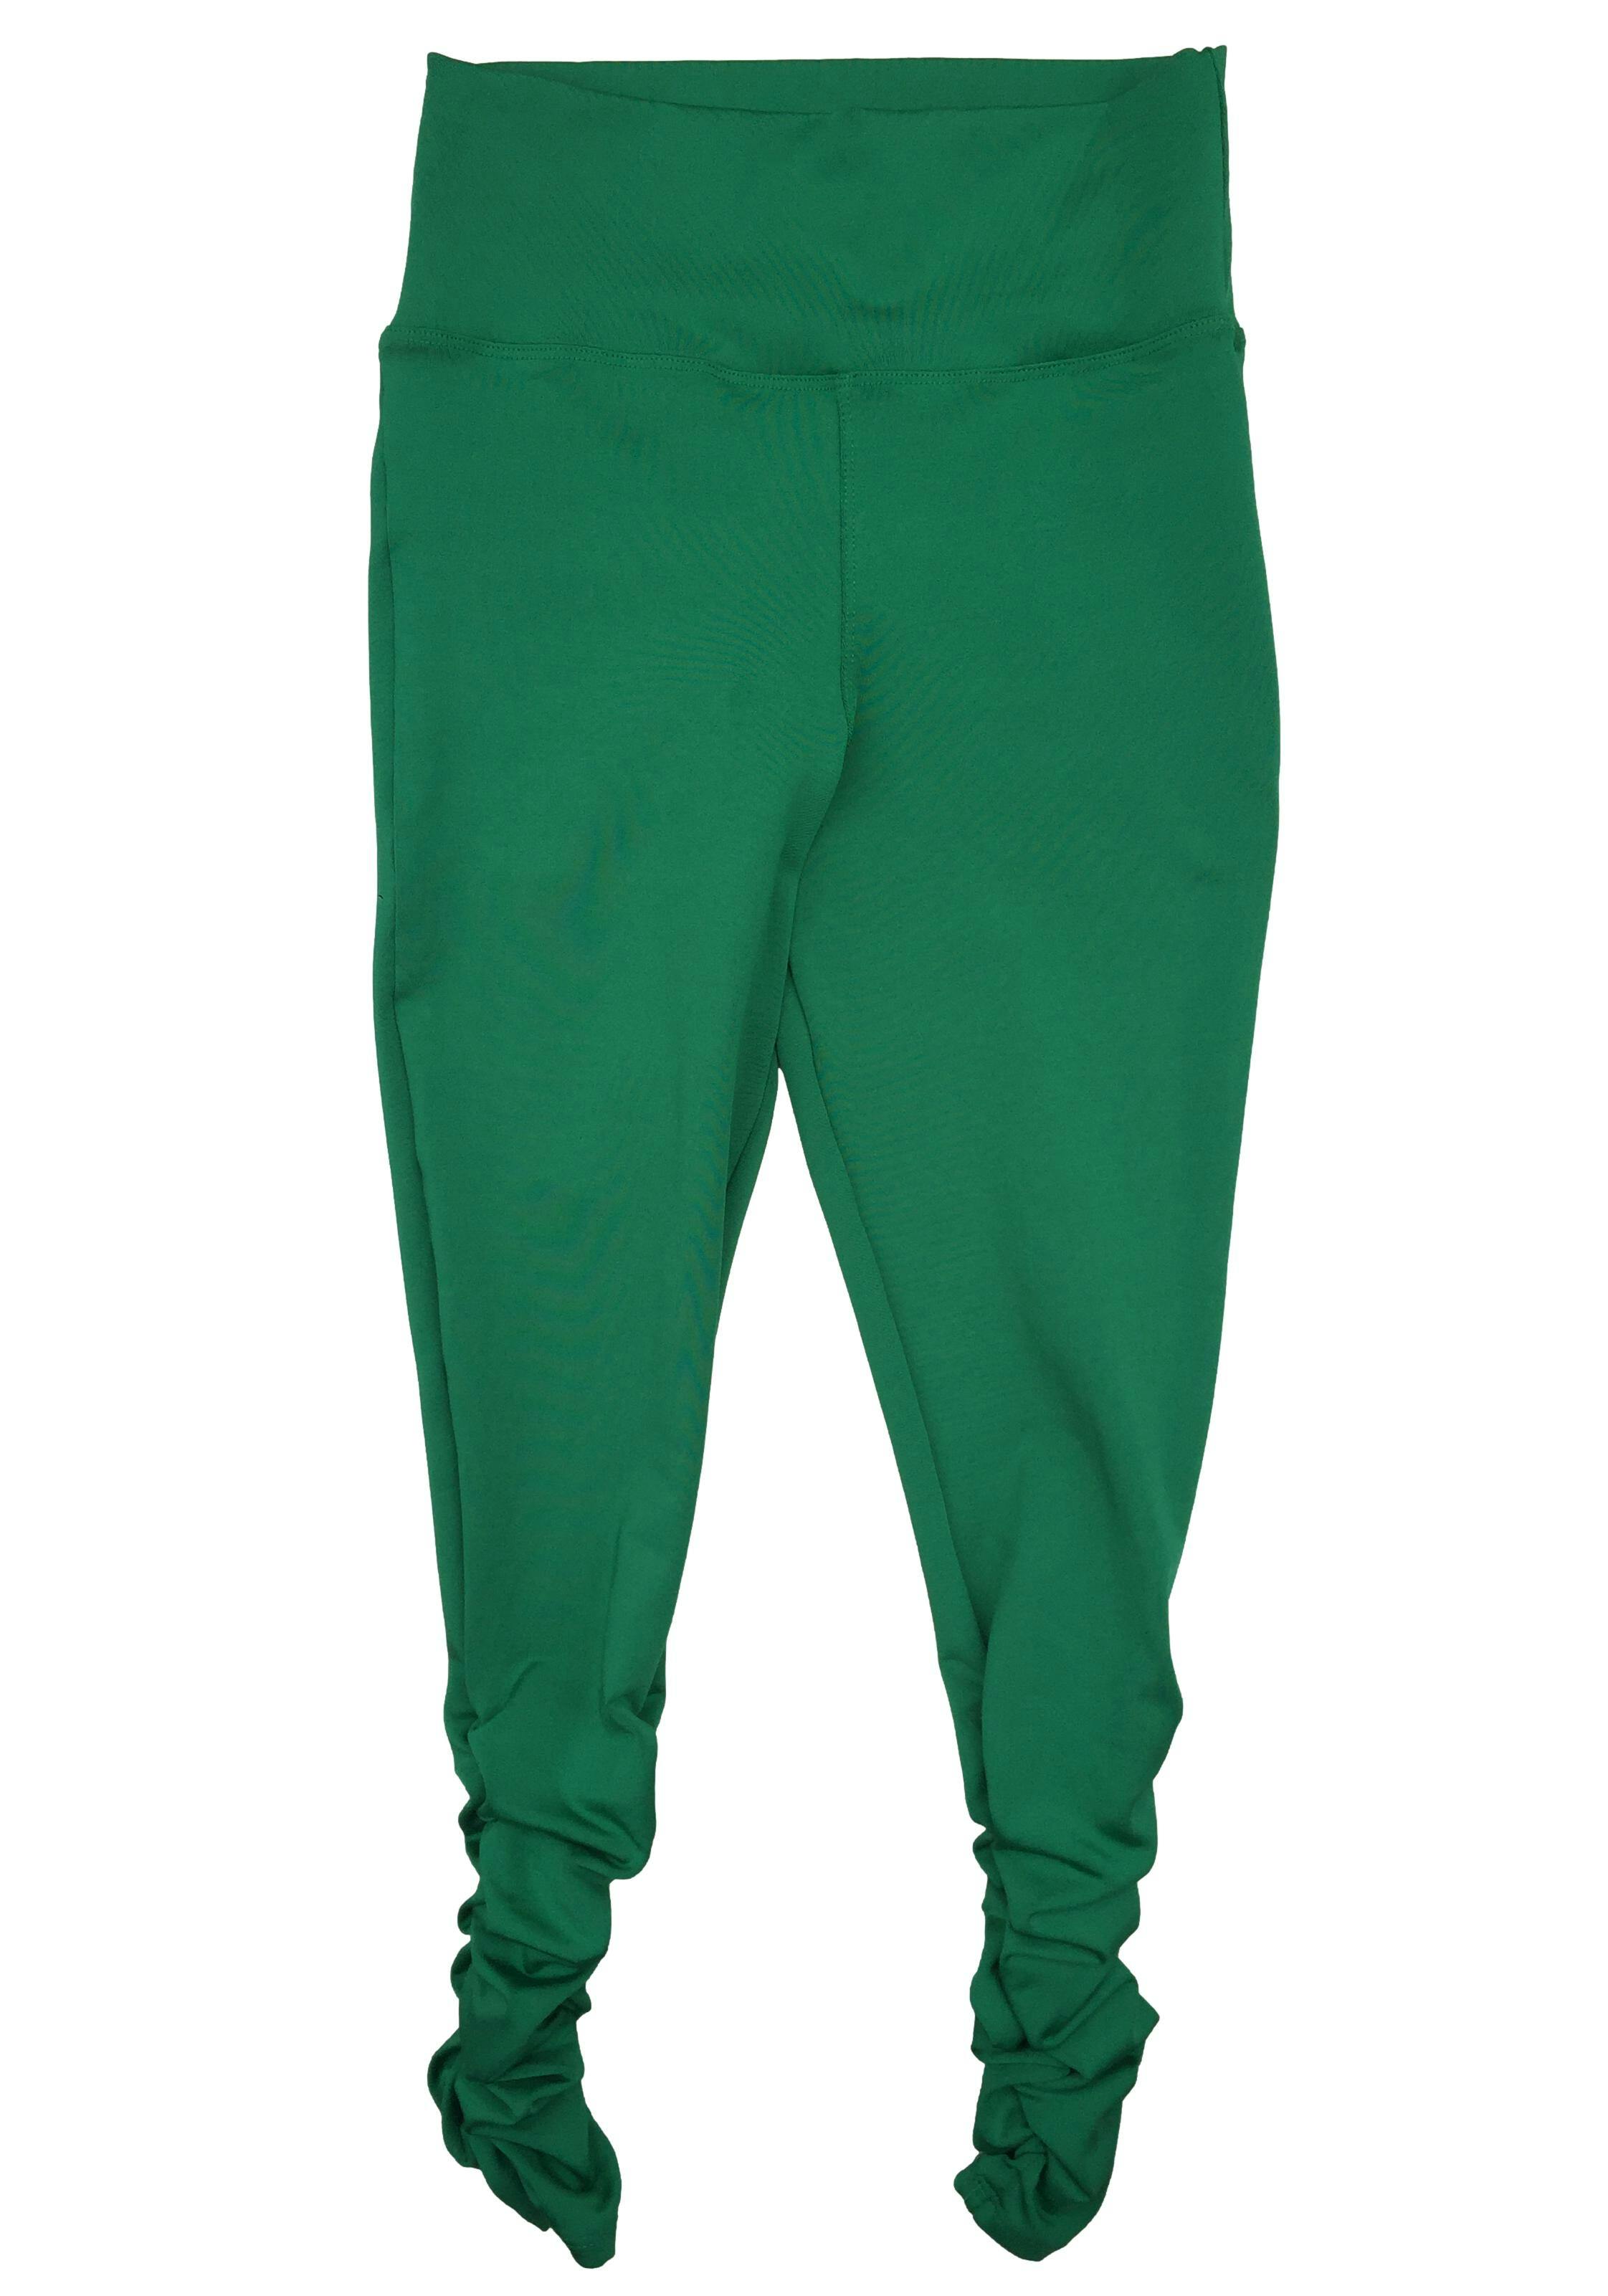 Leggings color verde con pretina ancha y fruncido en laterales. Cintura 60cm sin estirar, Largo 97cm.